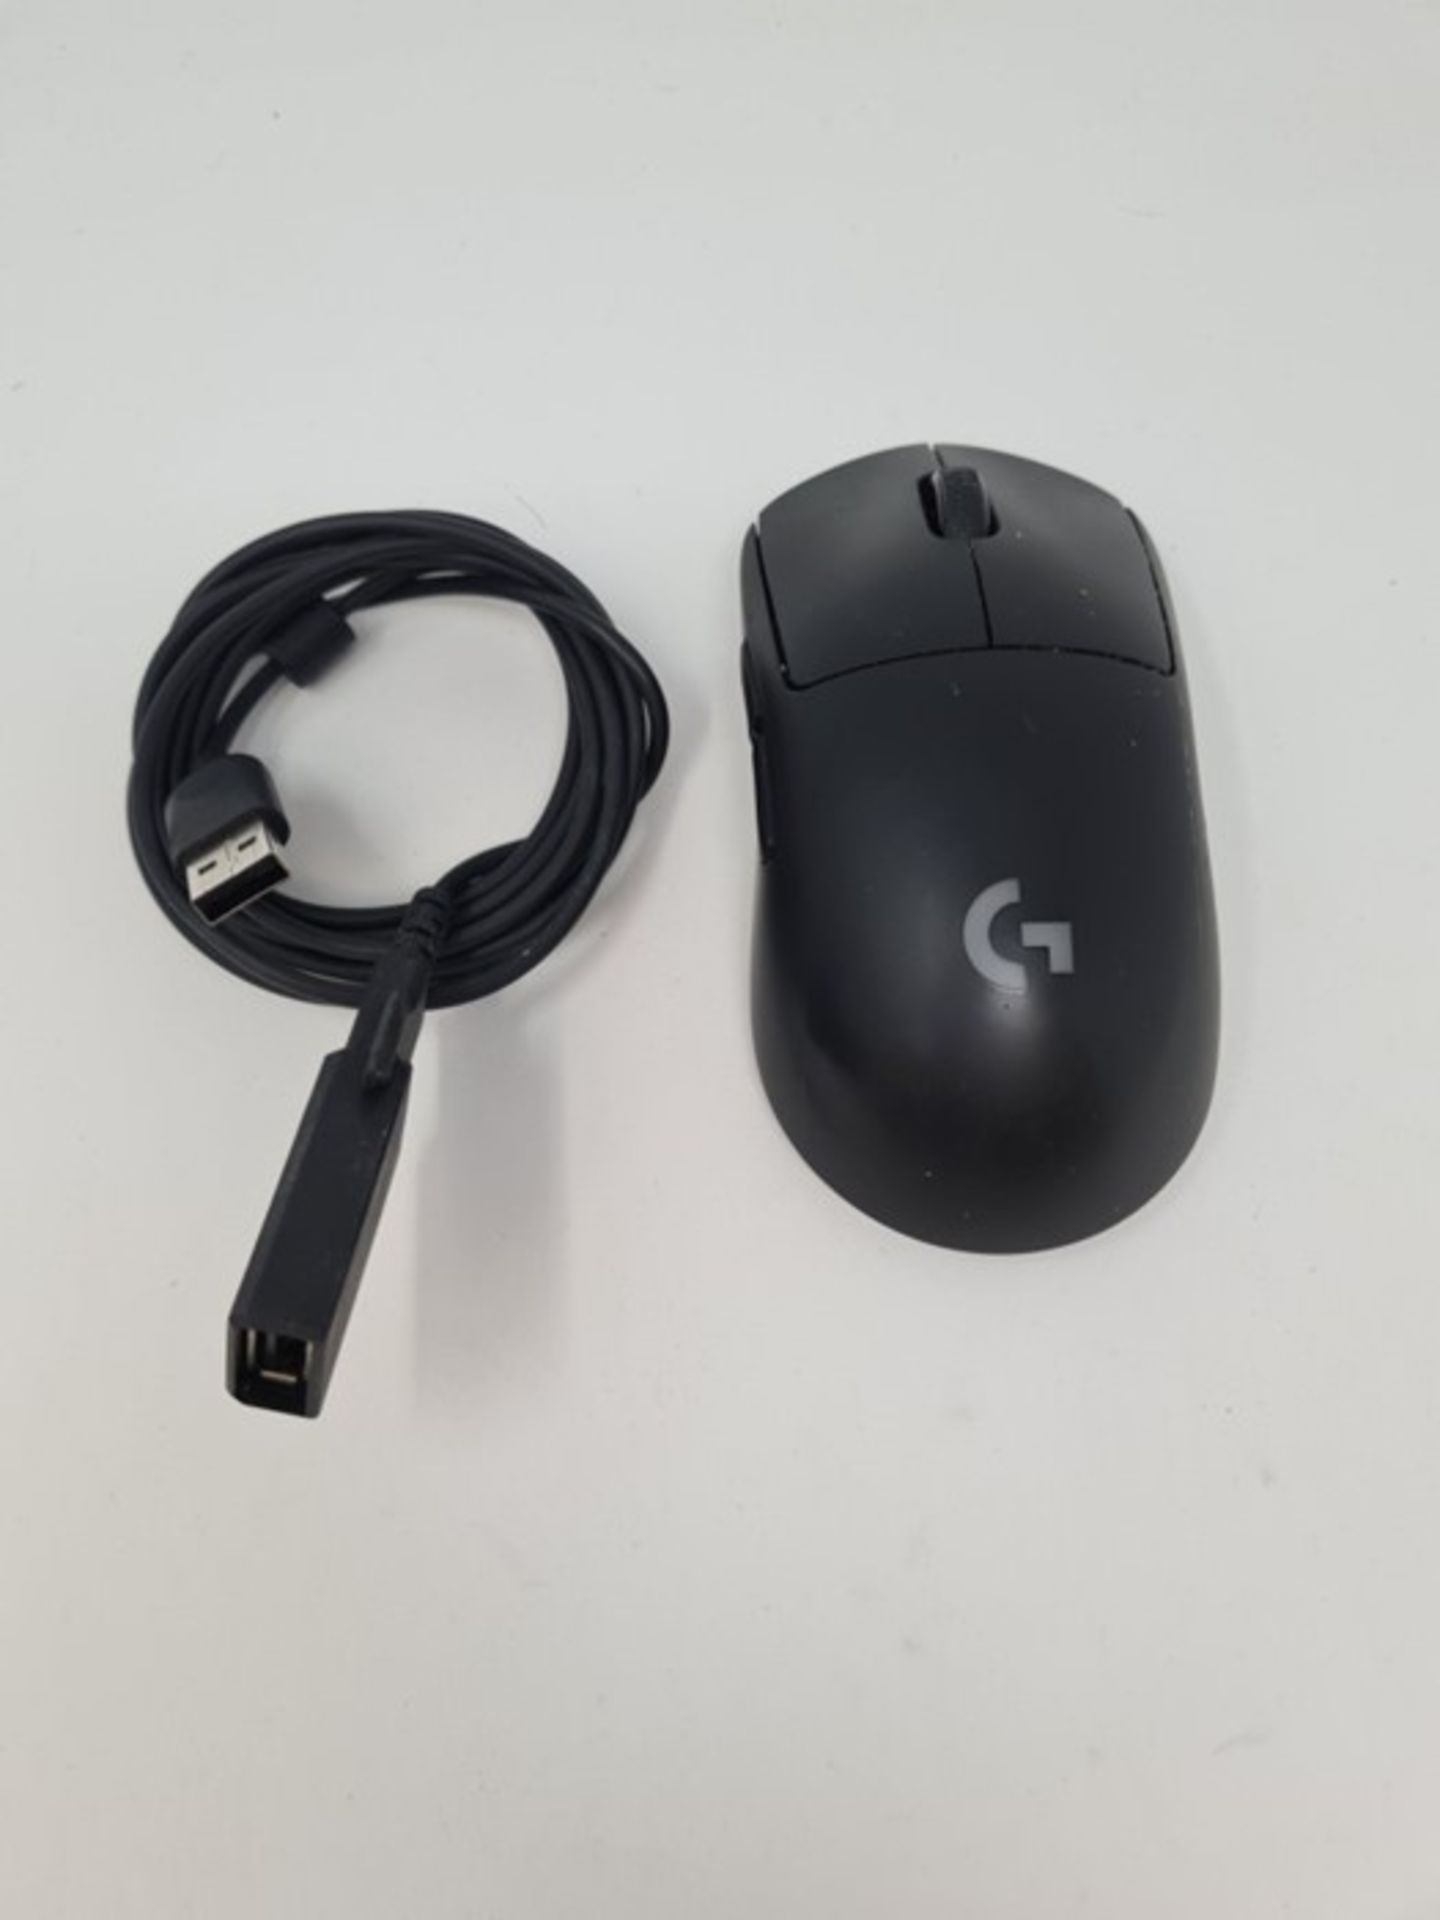 RRP £90.00 L�o�g�i�t�e�c�h� �G� �P�R�O� �W�i�r�e�l�e�s�s� �G�a�m�i�n�g� �M�o�u�s�e�,� �H�E�R�O� �1�6 - Image 2 of 2